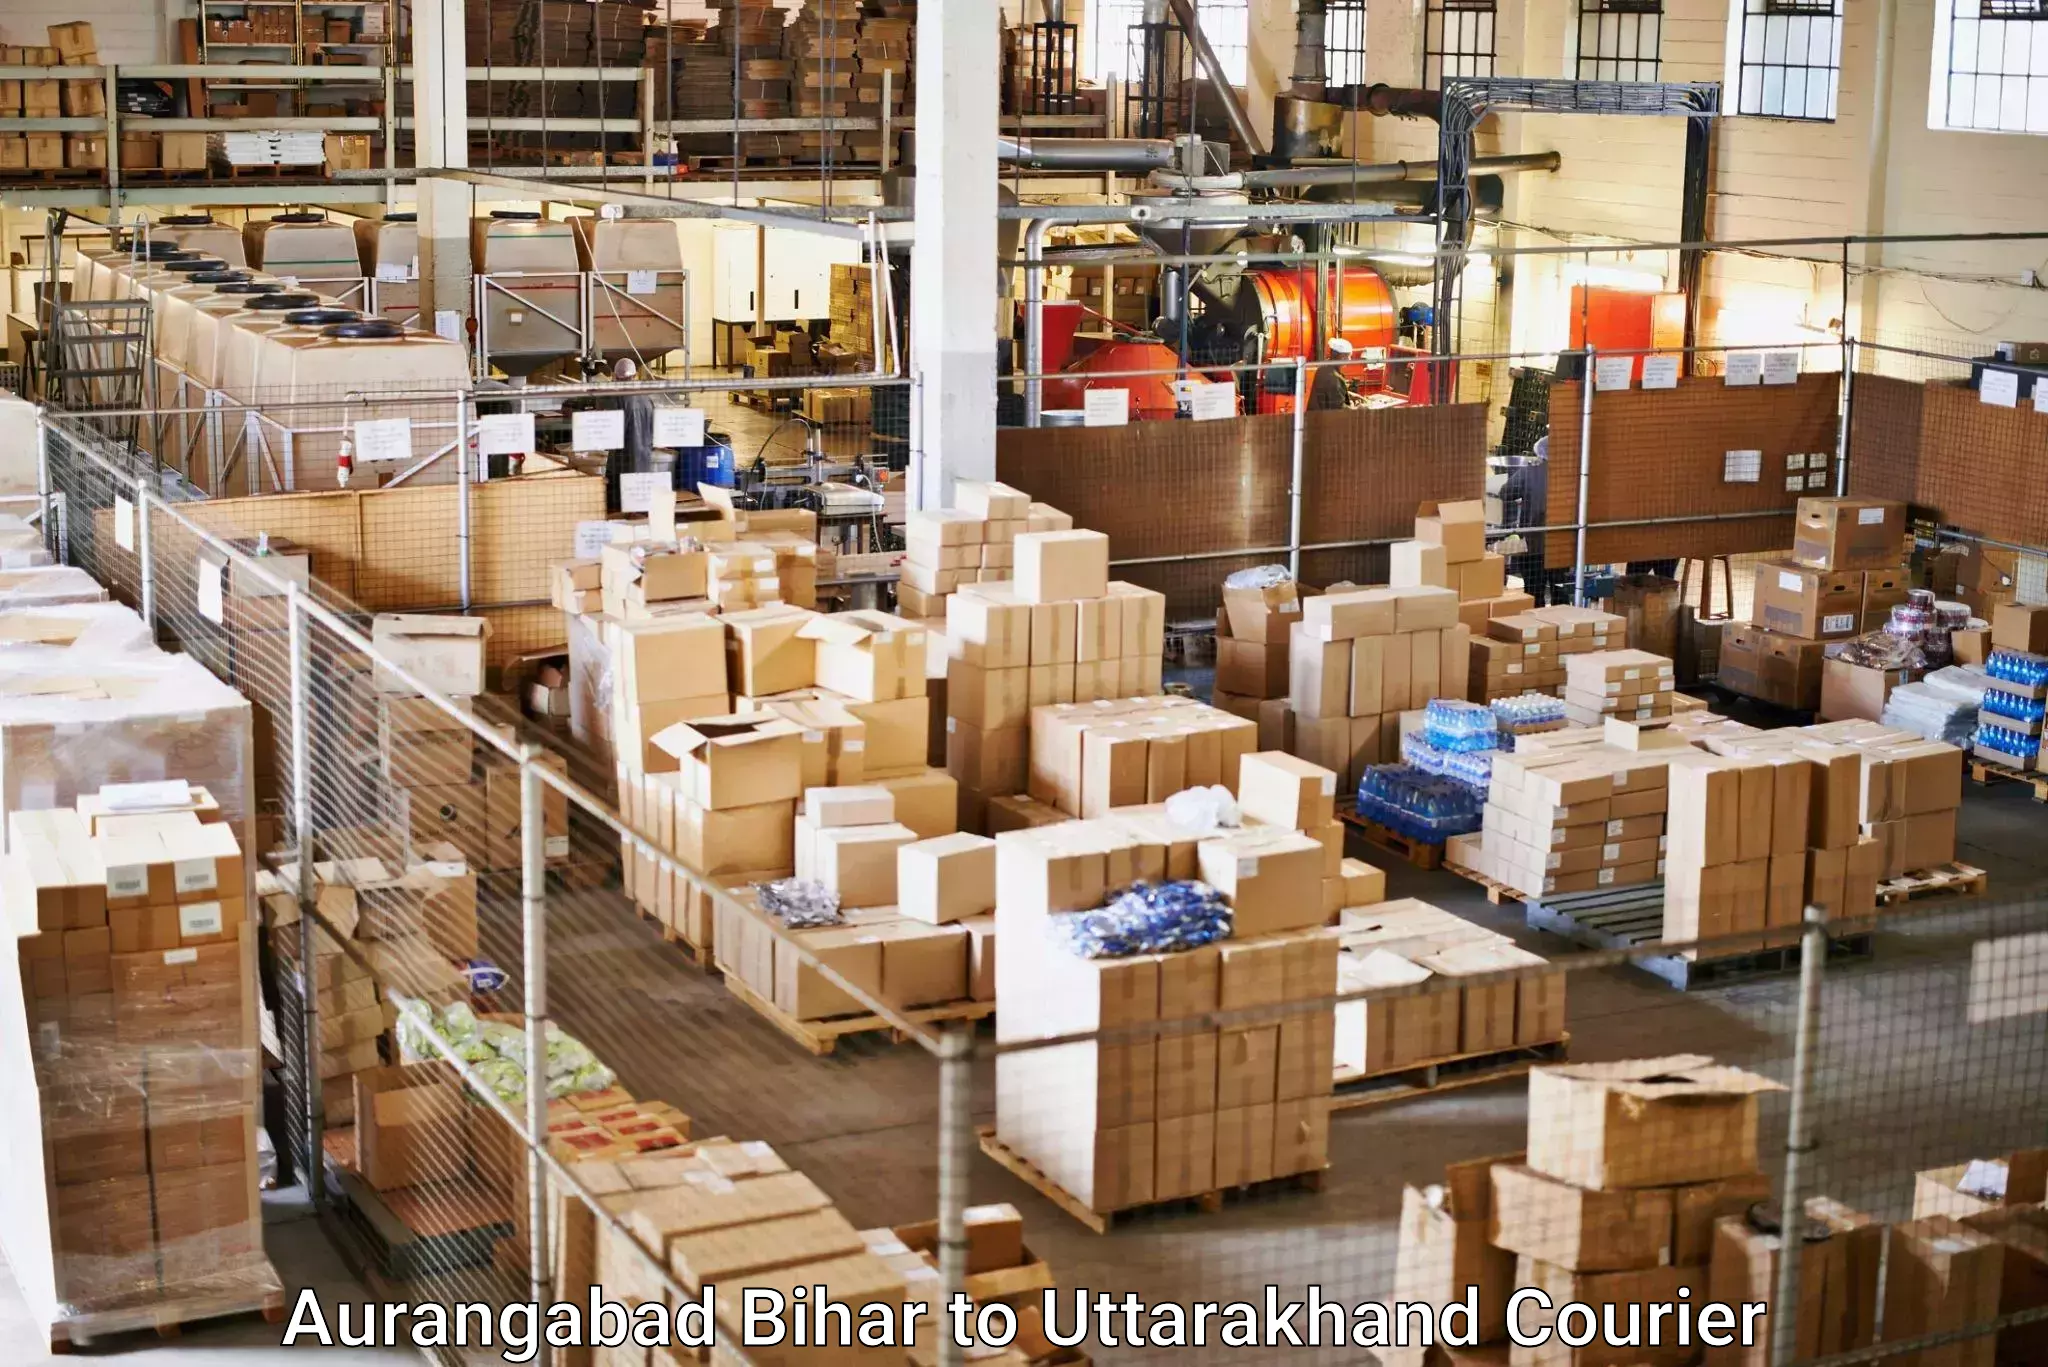 Cost-effective courier options Aurangabad Bihar to Someshwar